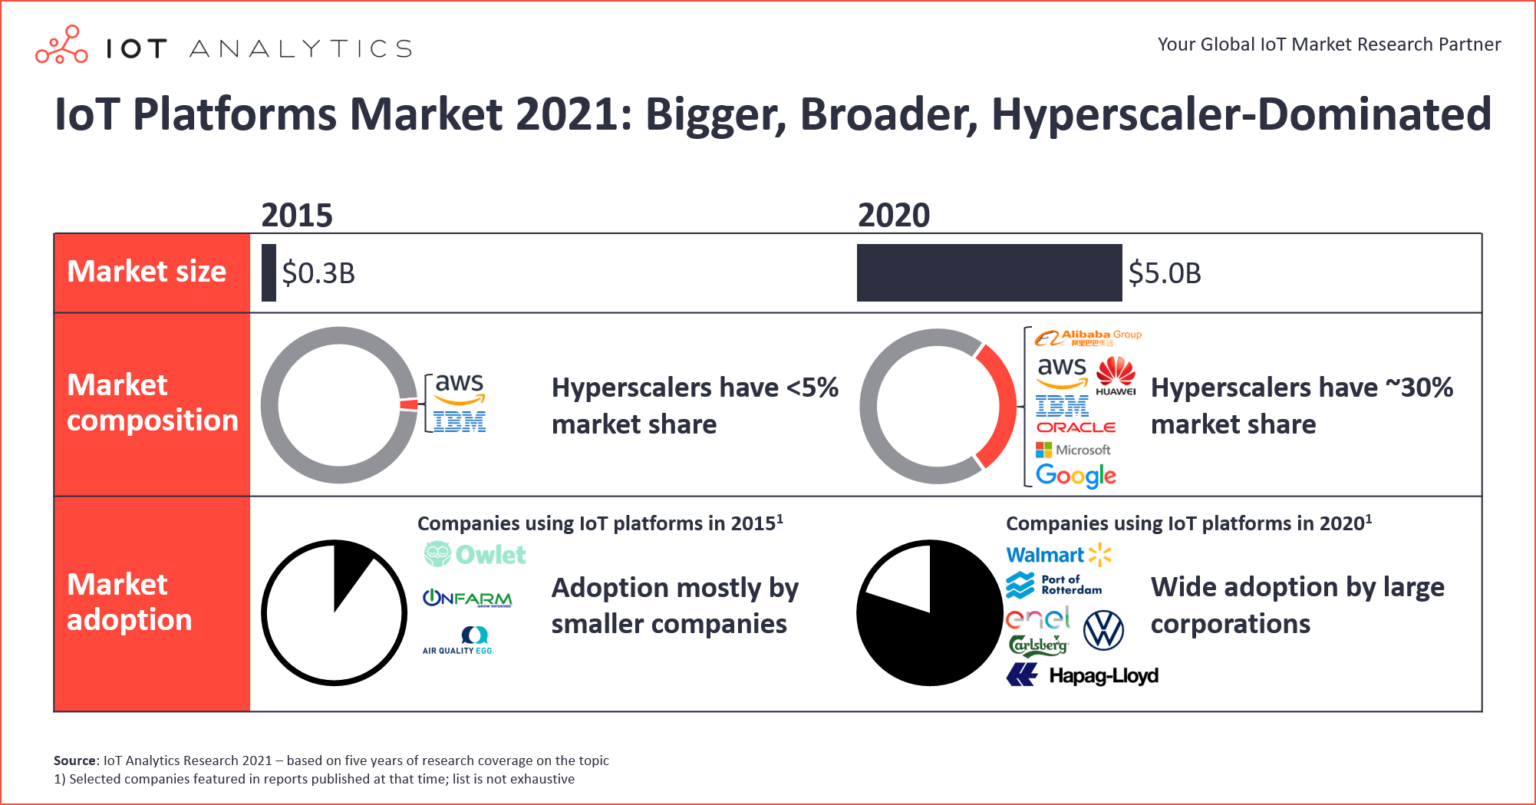 IoT-Platforms-Market-2021-Bigger-Broader-Hyperscaler-dominated-1536x805.png (292 KB)